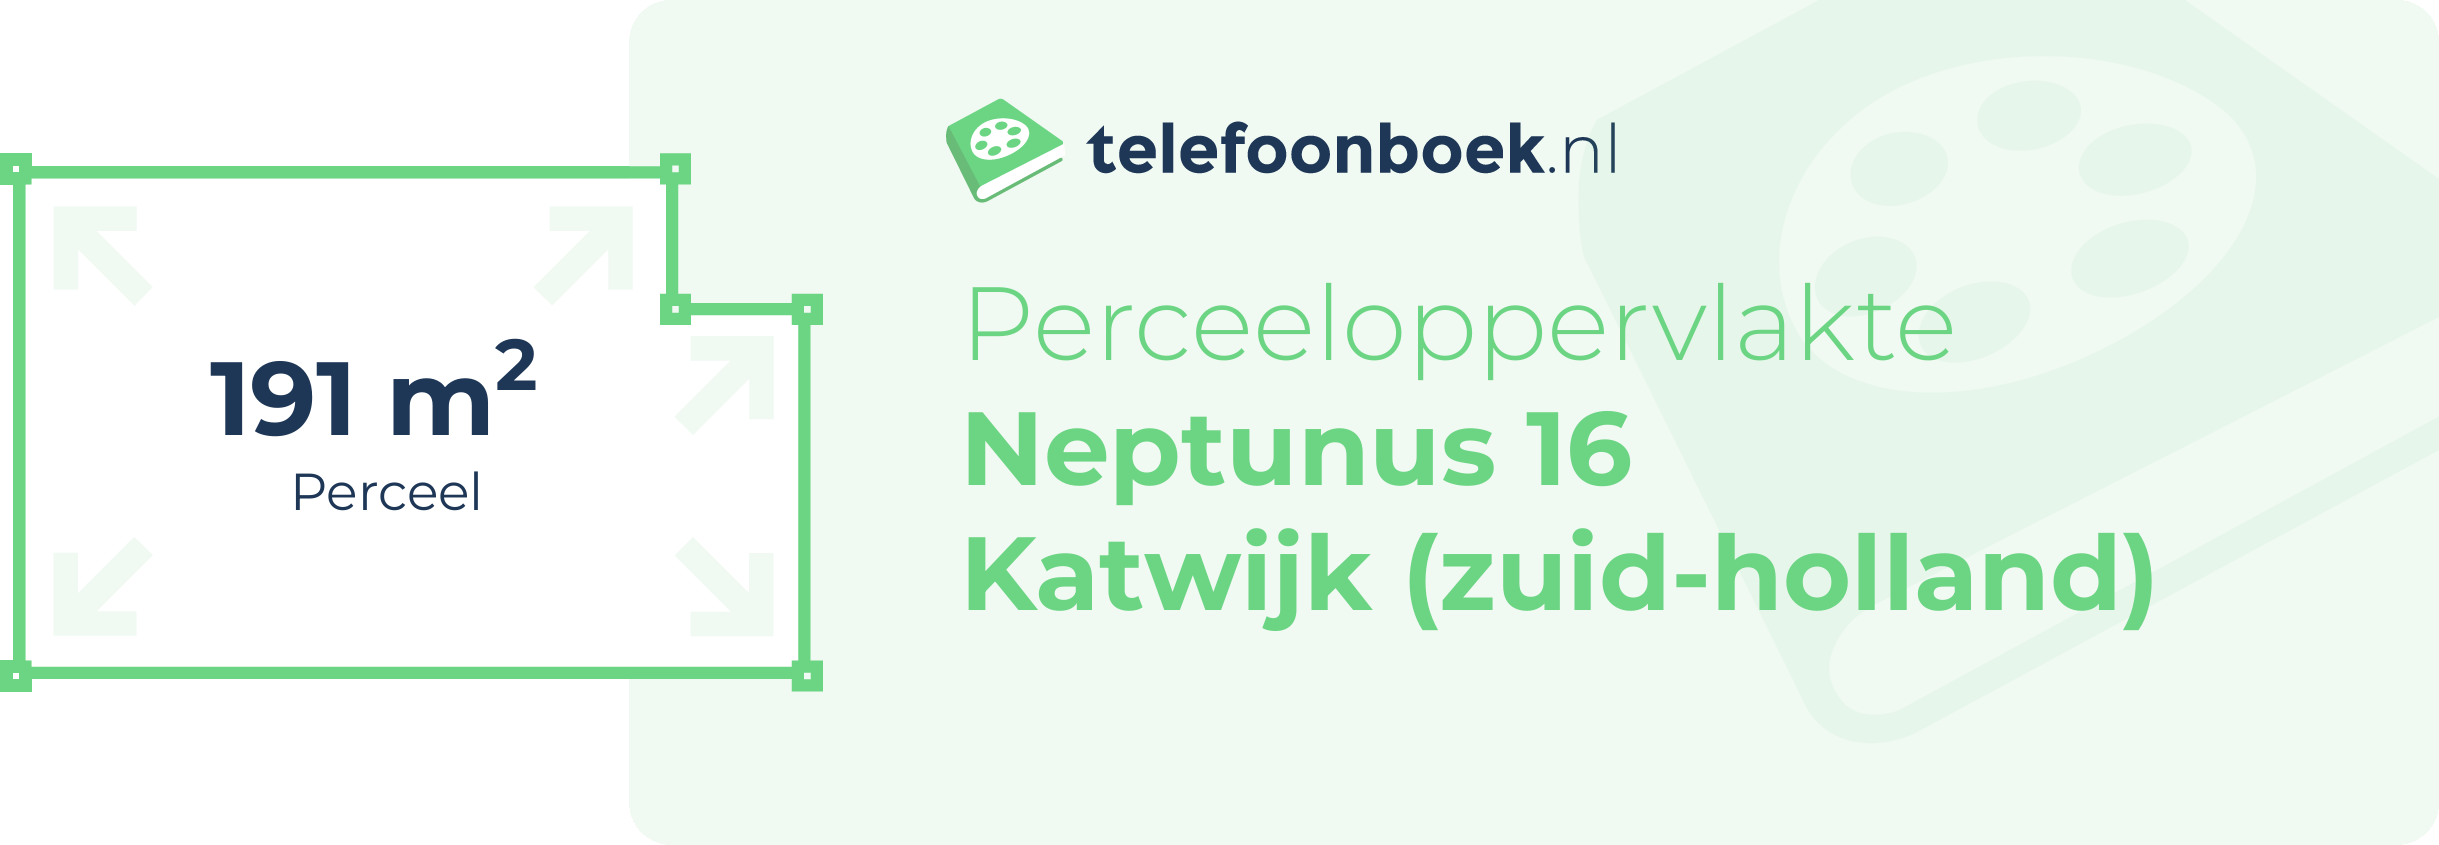 Perceeloppervlakte Neptunus 16 Katwijk (Zuid-Holland)